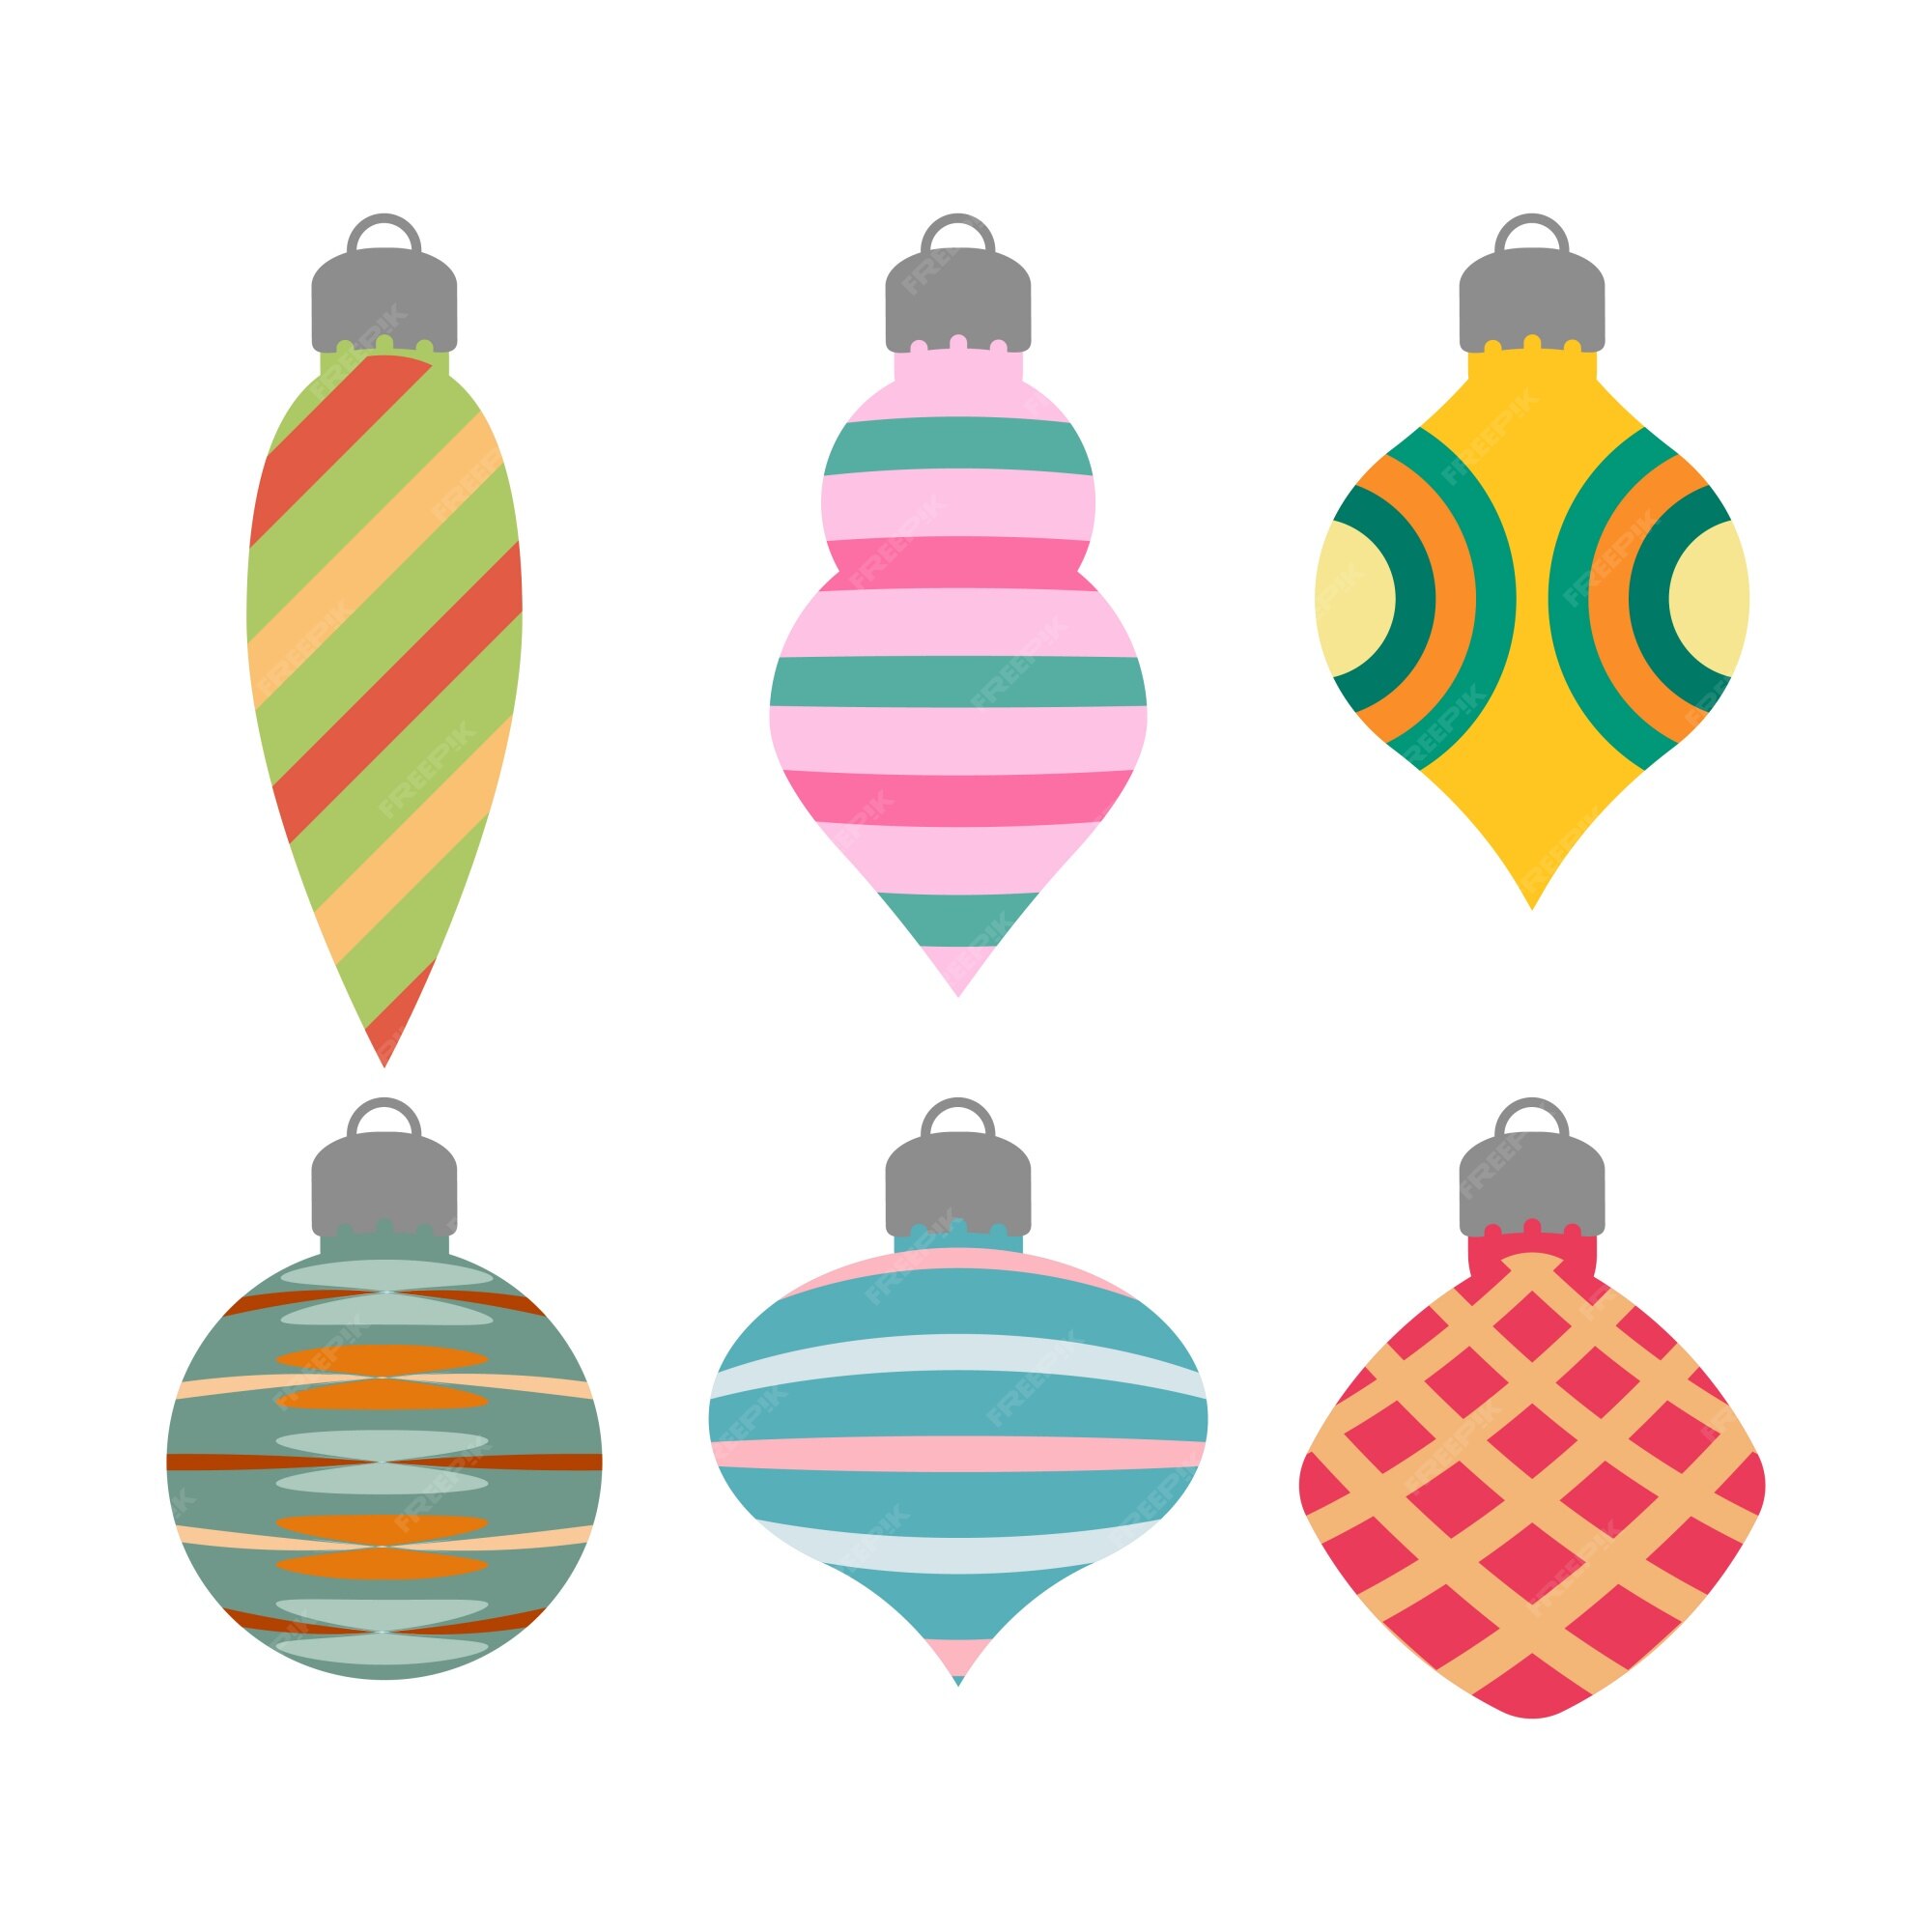 Vooruitzicht Heb geleerd Agressief Verzameling van eenvoudige kerst ornamenten van verschillende vormen |  Premium Vector